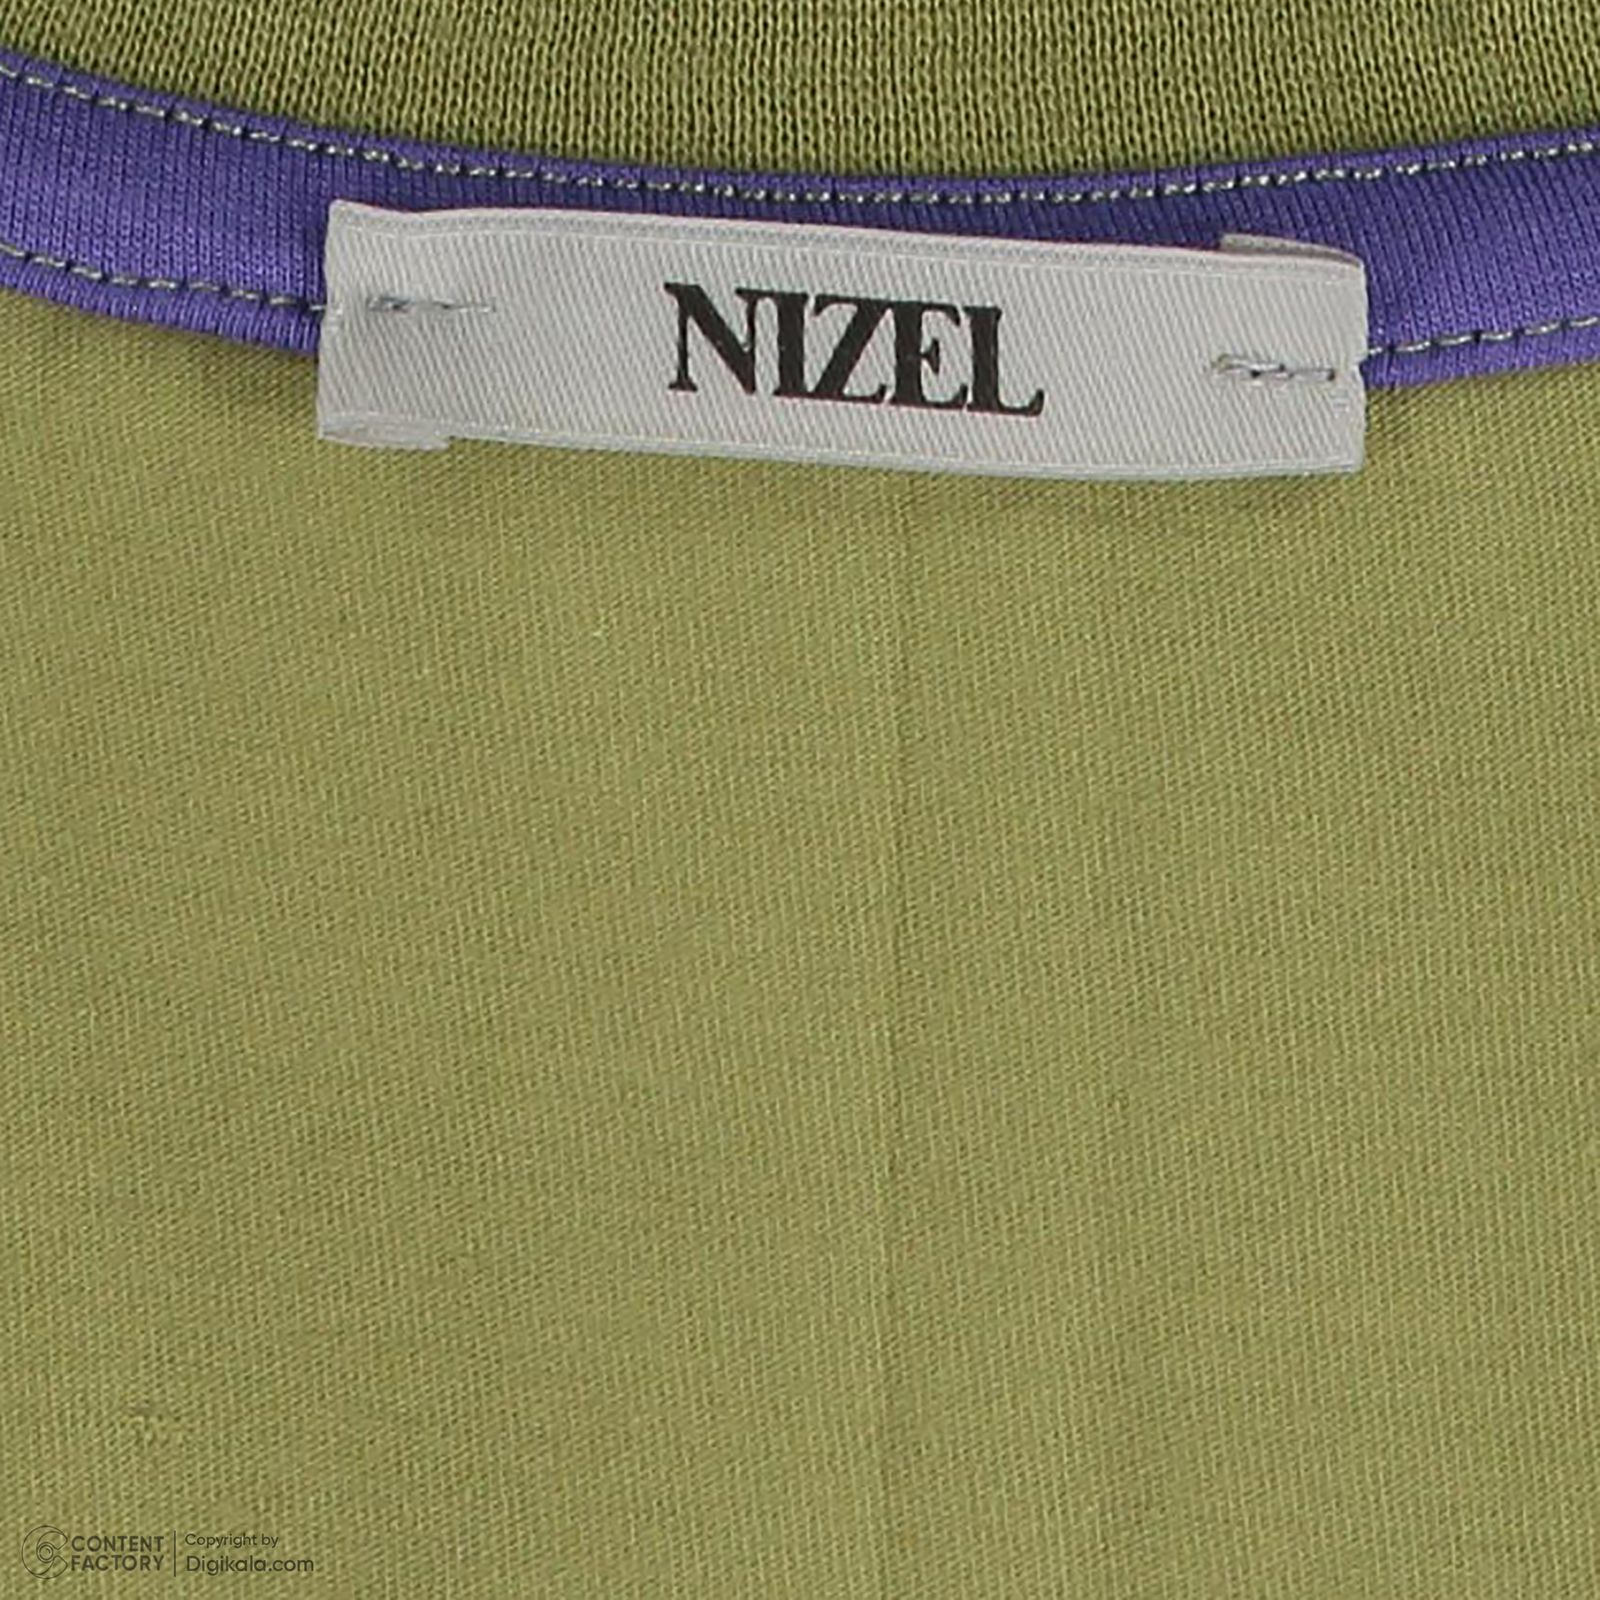 کراپ تی شرت آستین کوتاه زنانه نیزل مدل 0698-094 رنگ سبز -  - 2